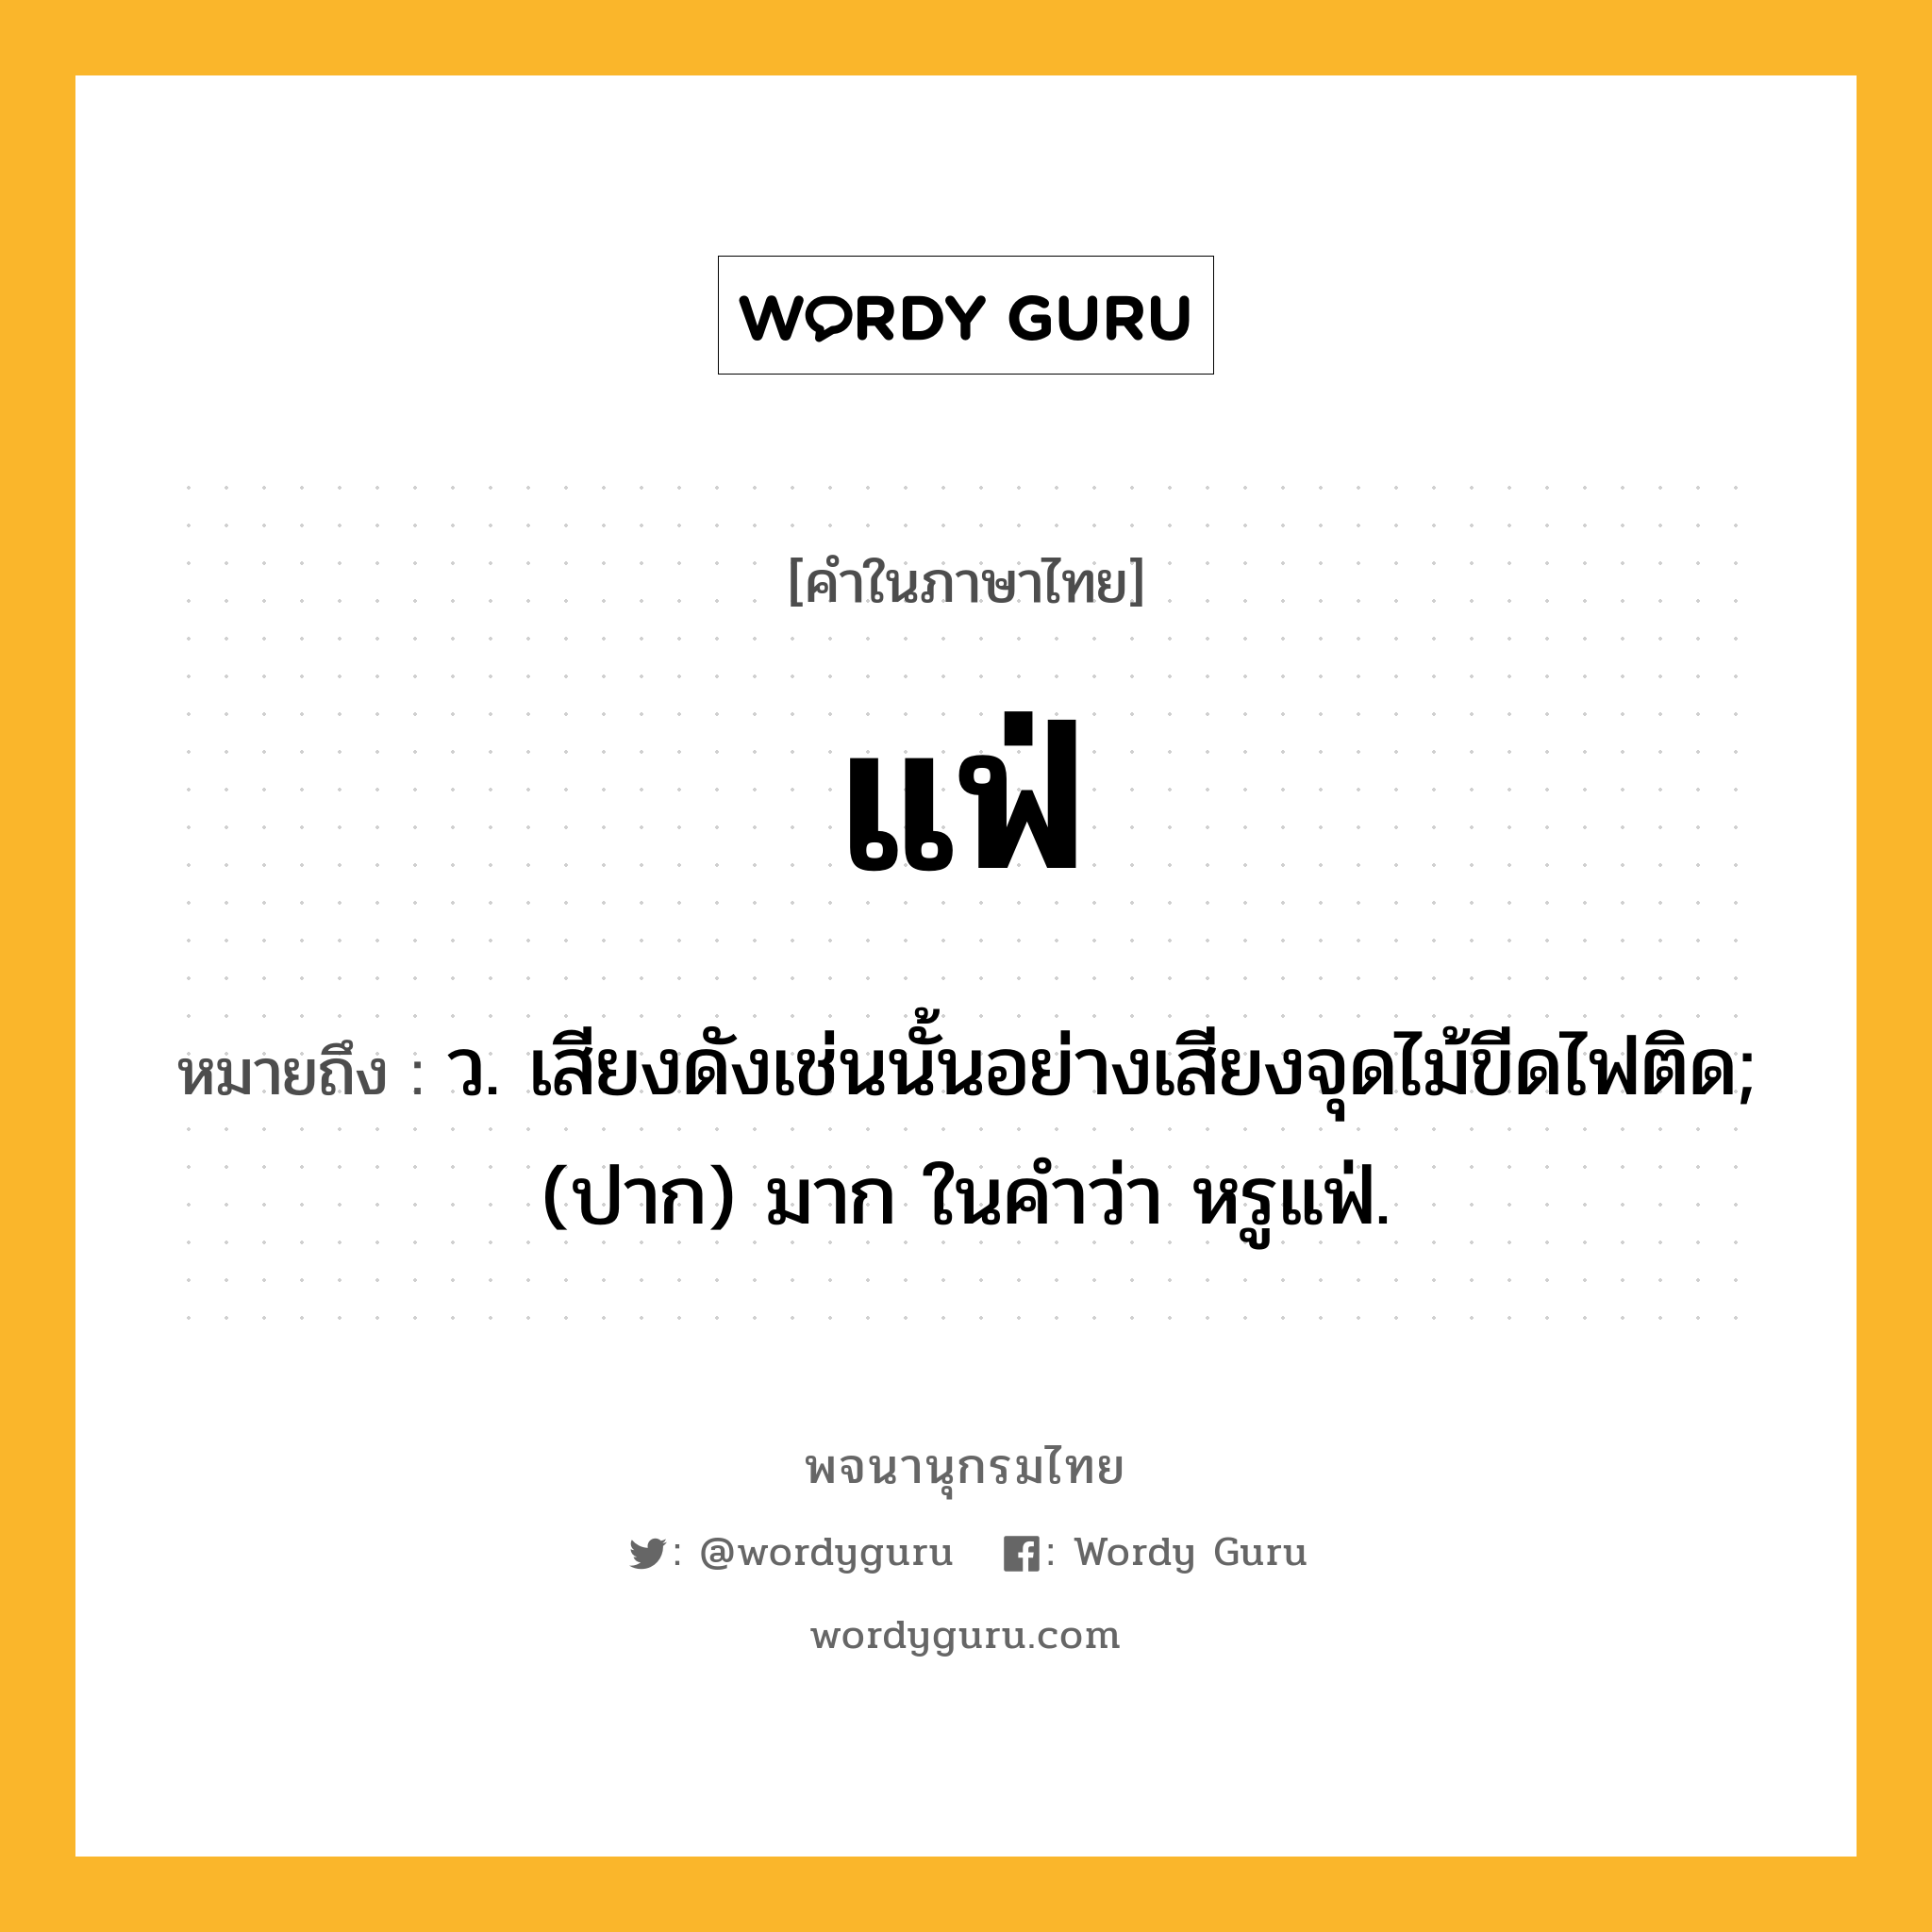 แฟ่ หมายถึงอะไร?, คำในภาษาไทย แฟ่ หมายถึง ว. เสียงดังเช่นนั้นอย่างเสียงจุดไม้ขีดไฟติด; (ปาก) มาก ในคำว่า หรูแฟ่.